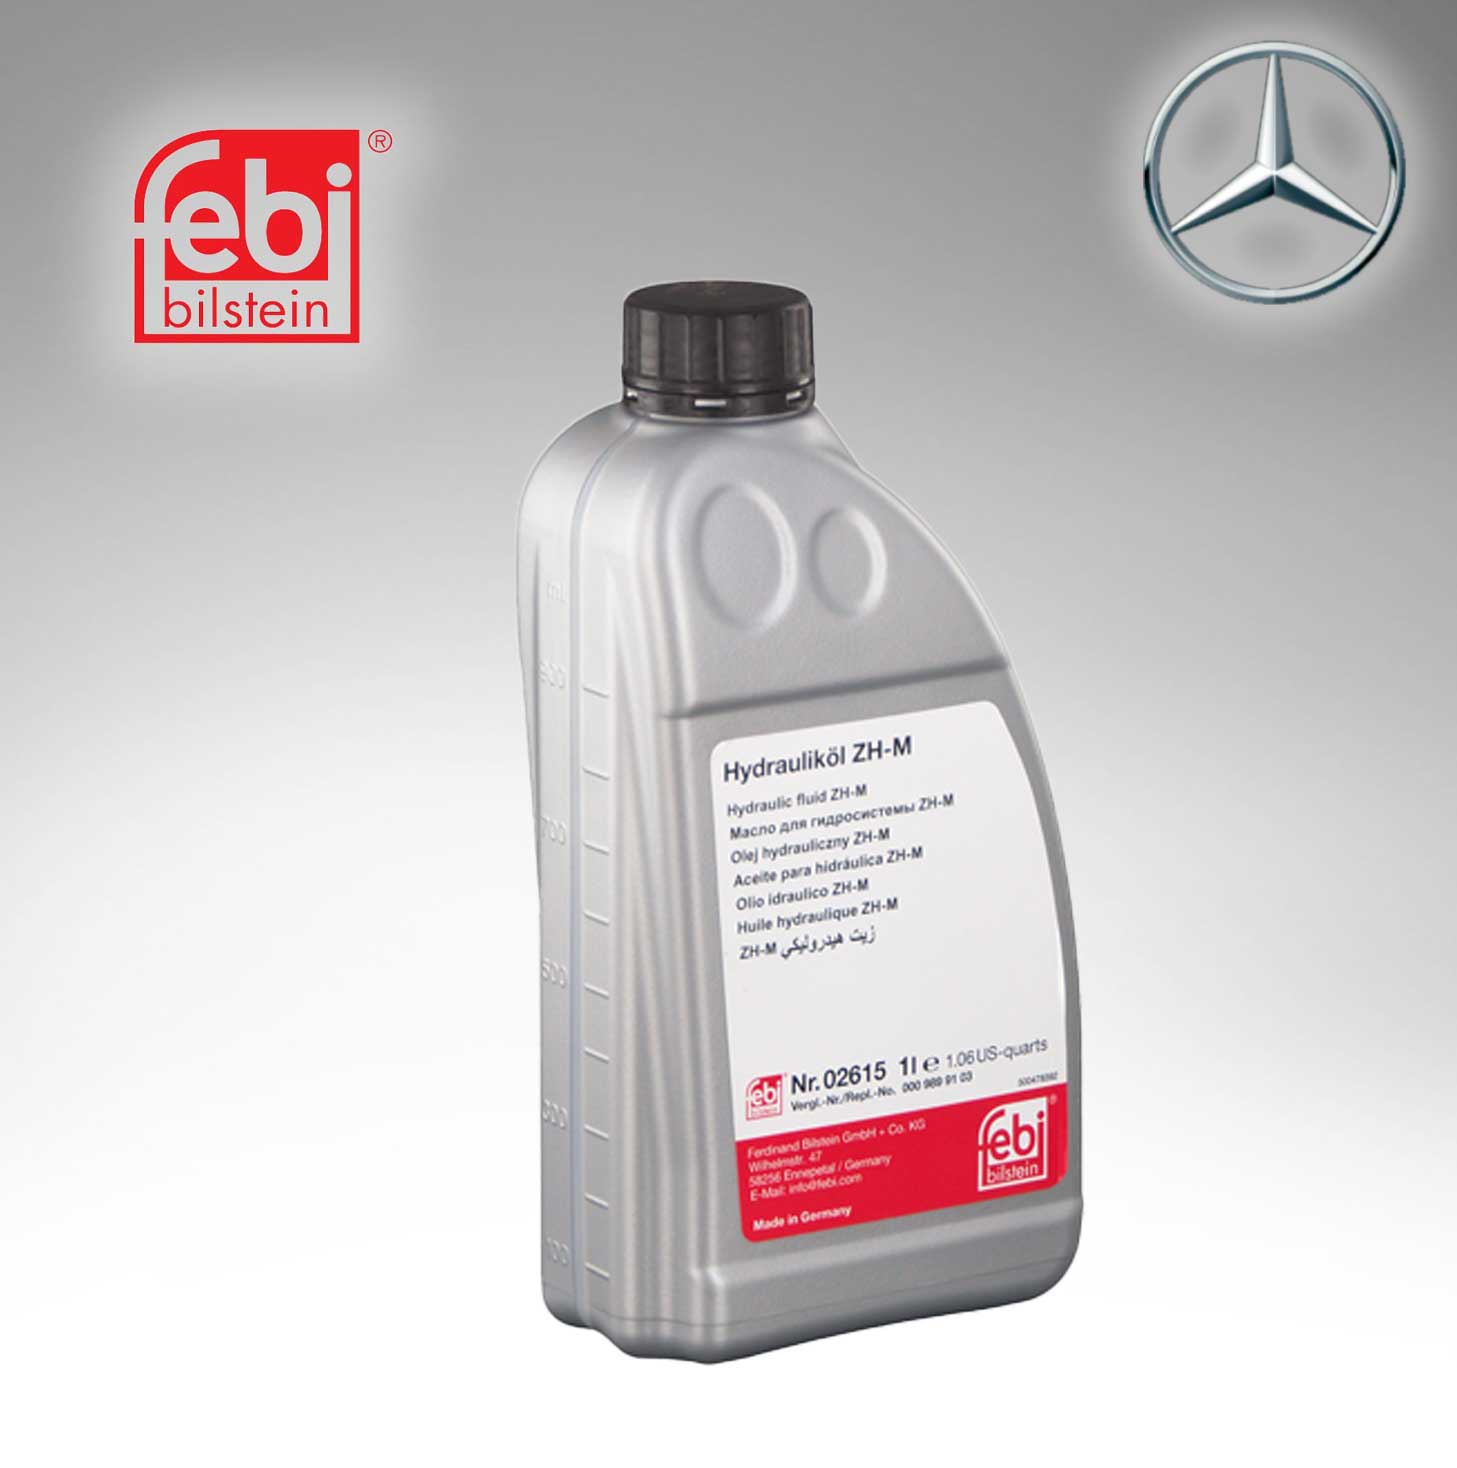 Febi Hydraulic Oil For Mercedes Benz, BMW 0009899103